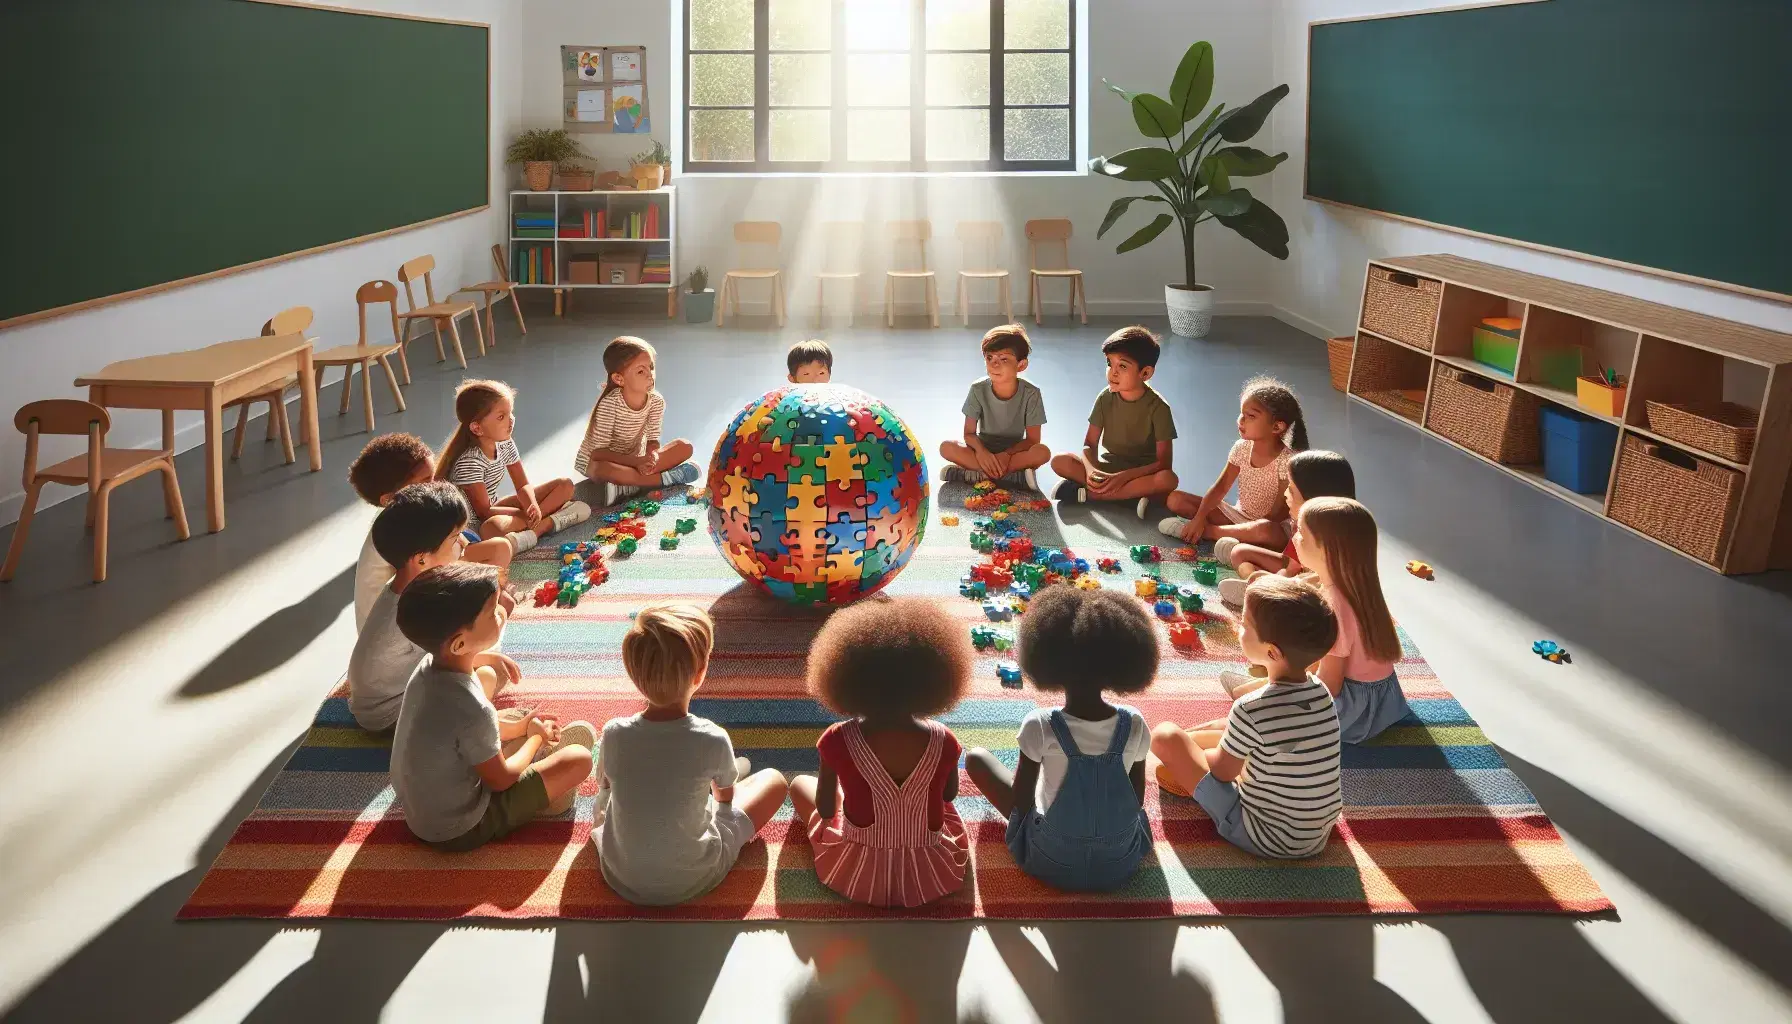 Bambini di diverse etnie concentrati a completare un puzzle sferico colorato in una luminosa aula scolastica con luce naturale.